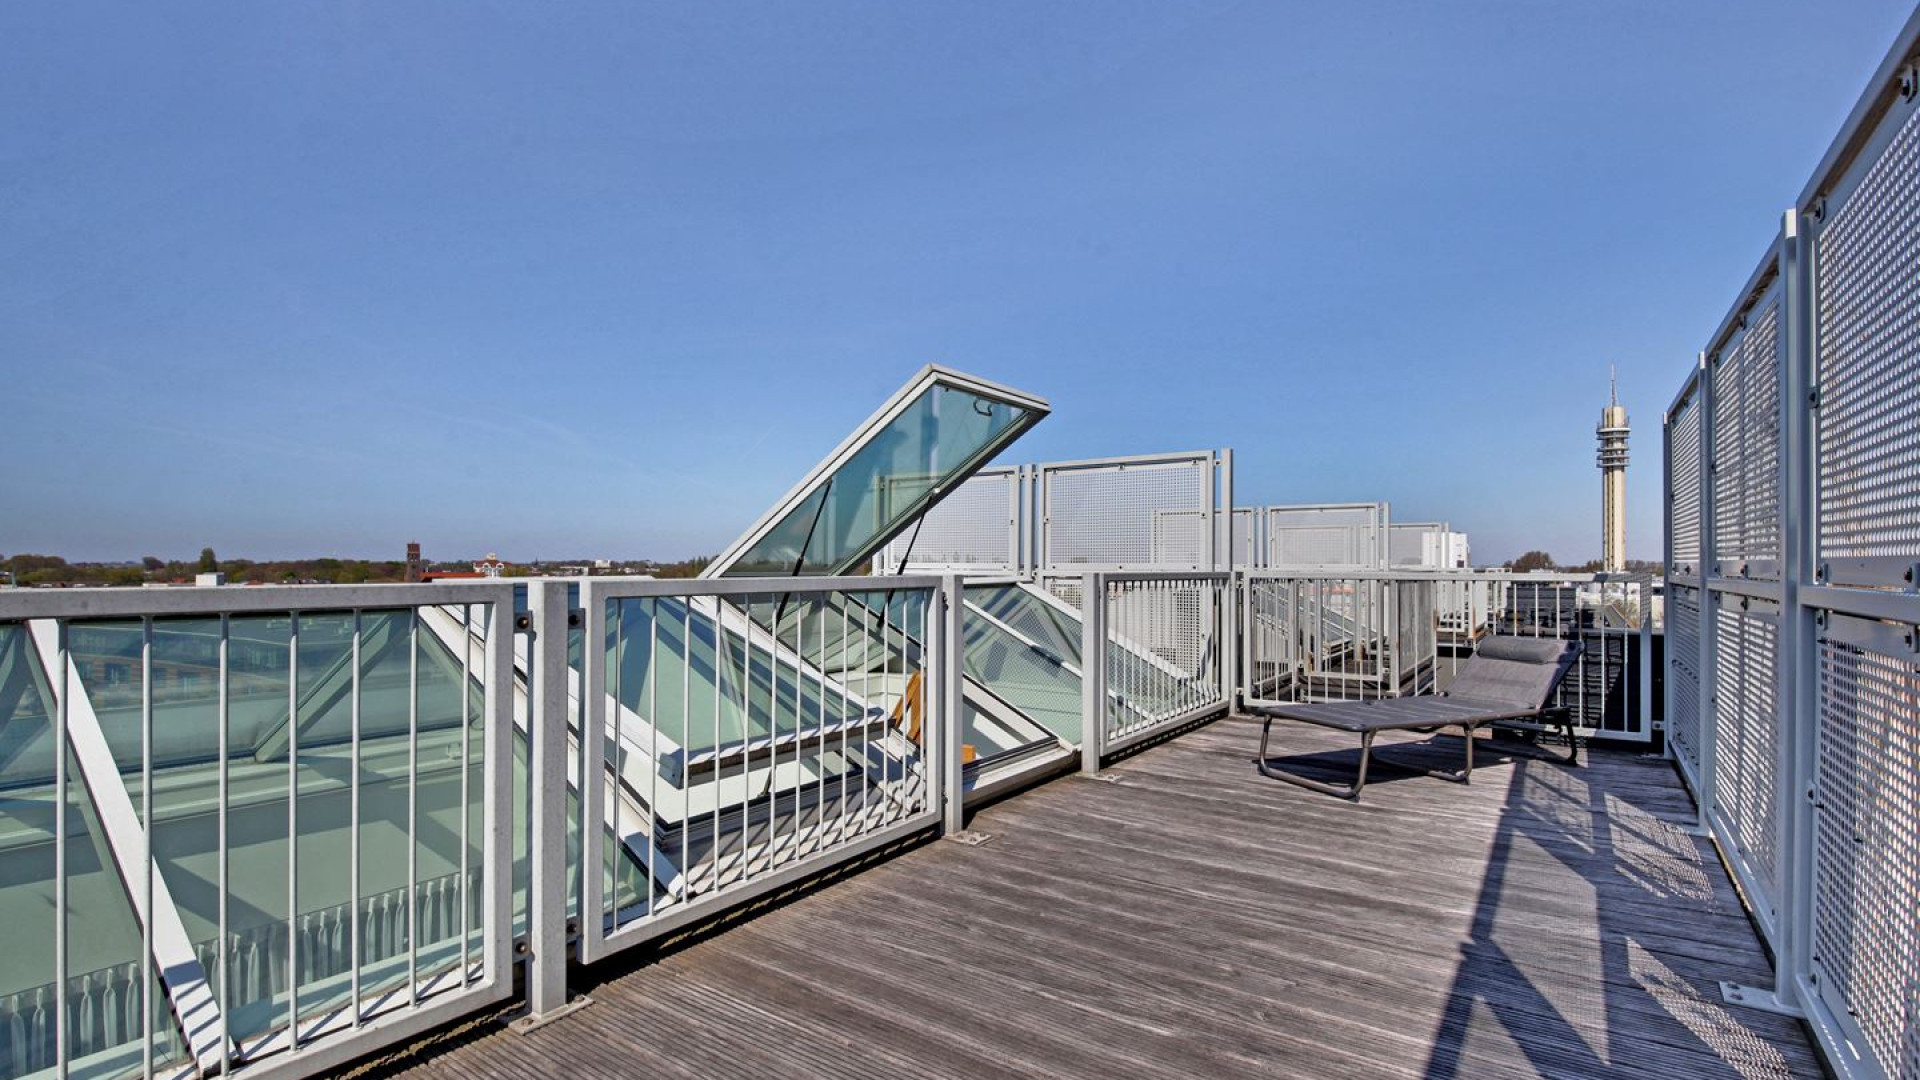 Voetballer Micky van de Ven koopt dit penthouse met riant uitzicht. Zie foto's 14